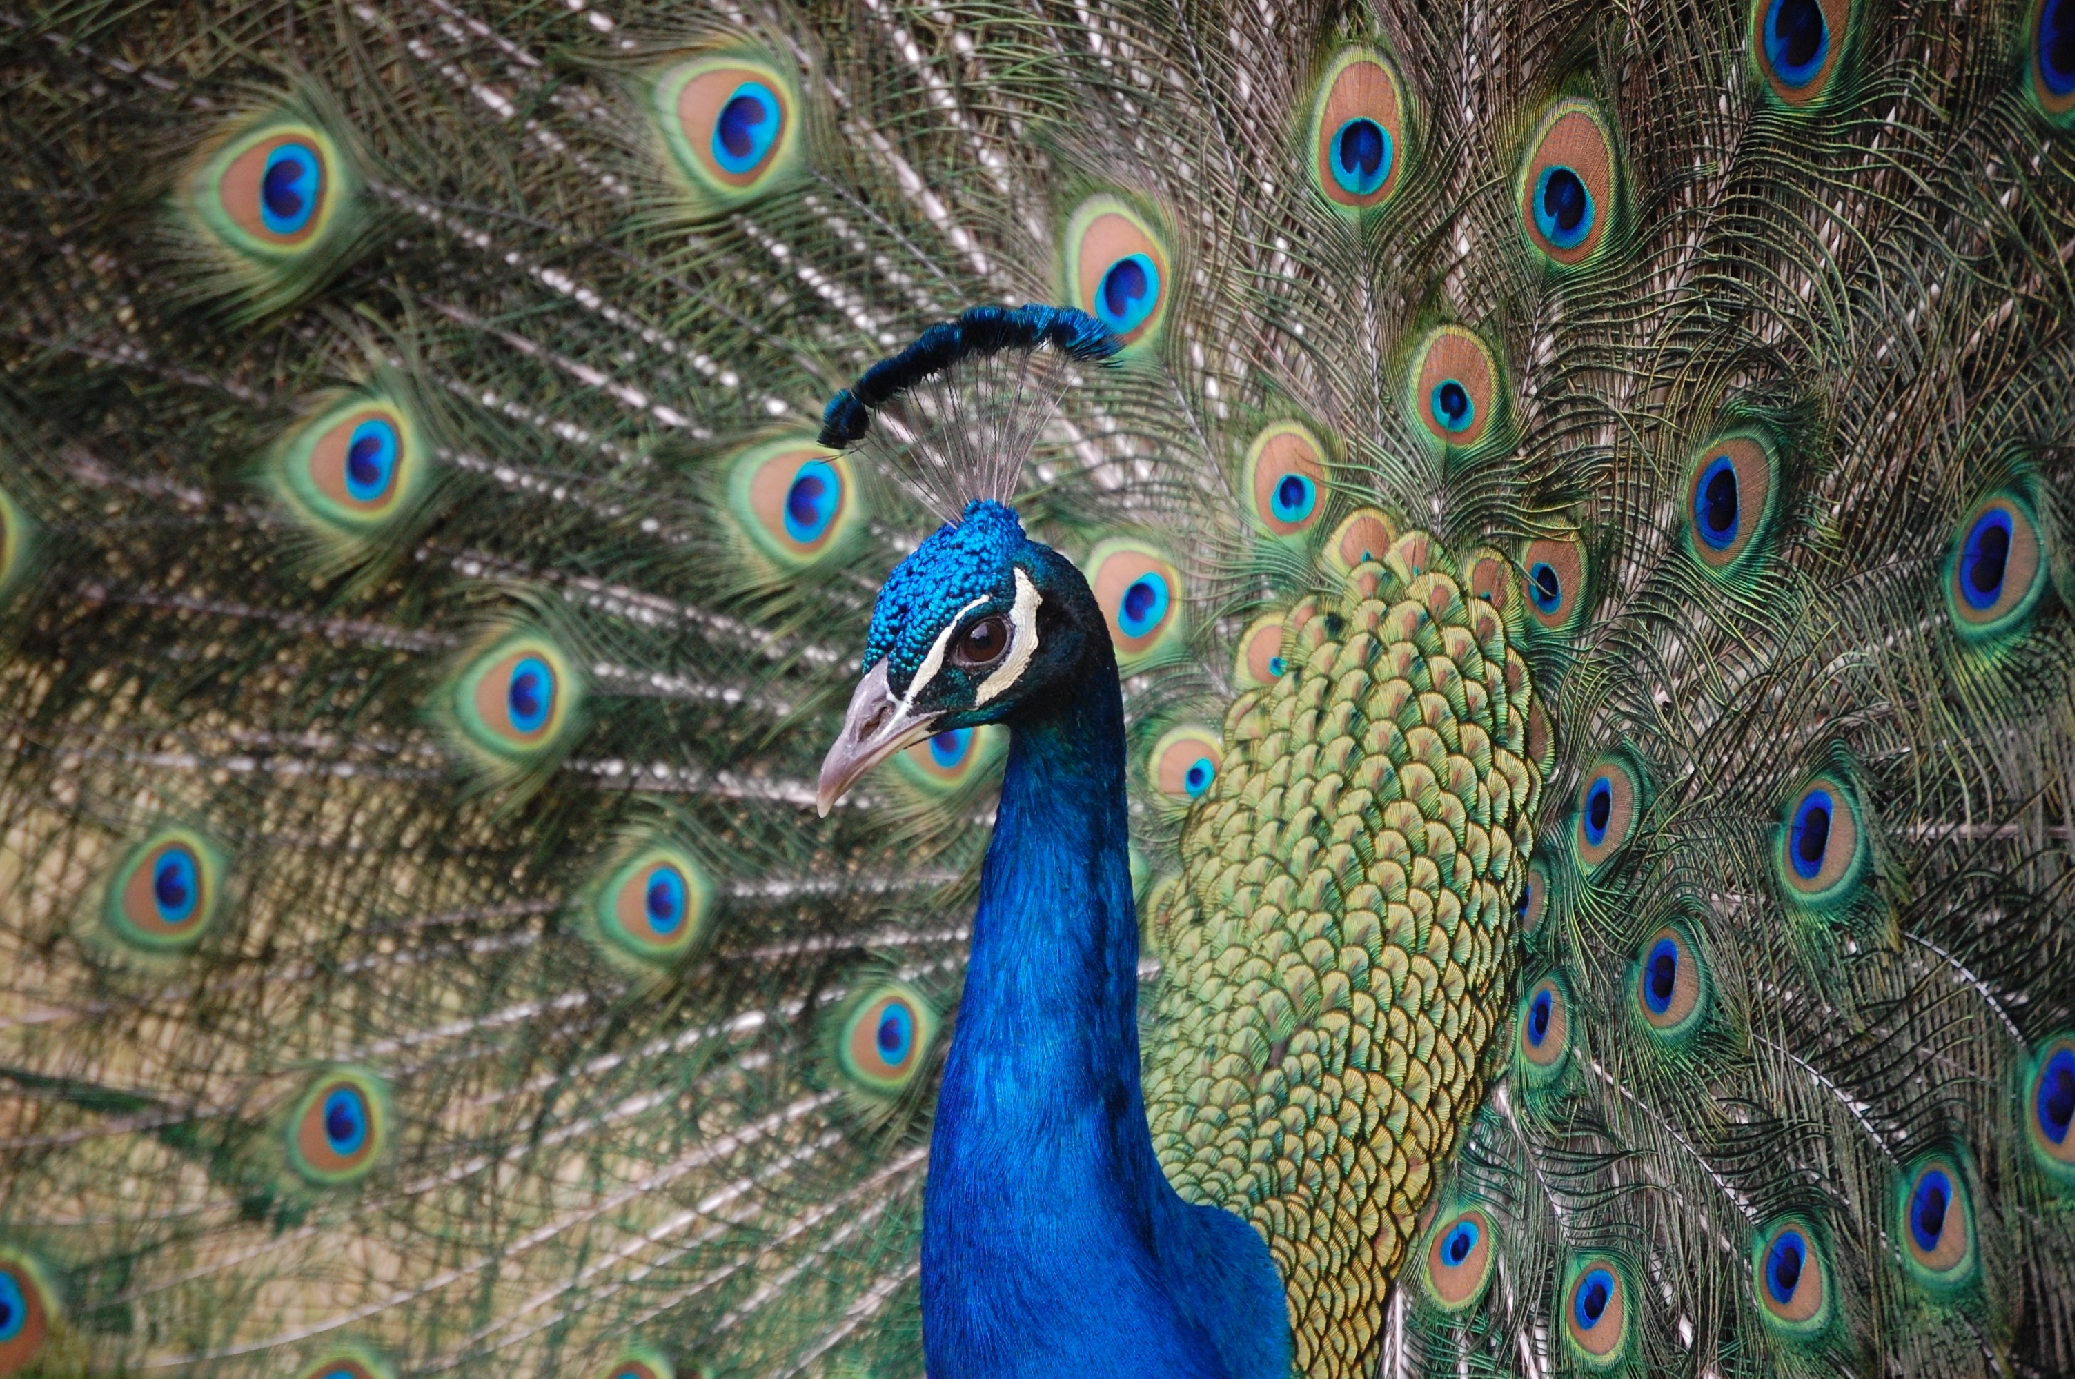 My favorite peacock